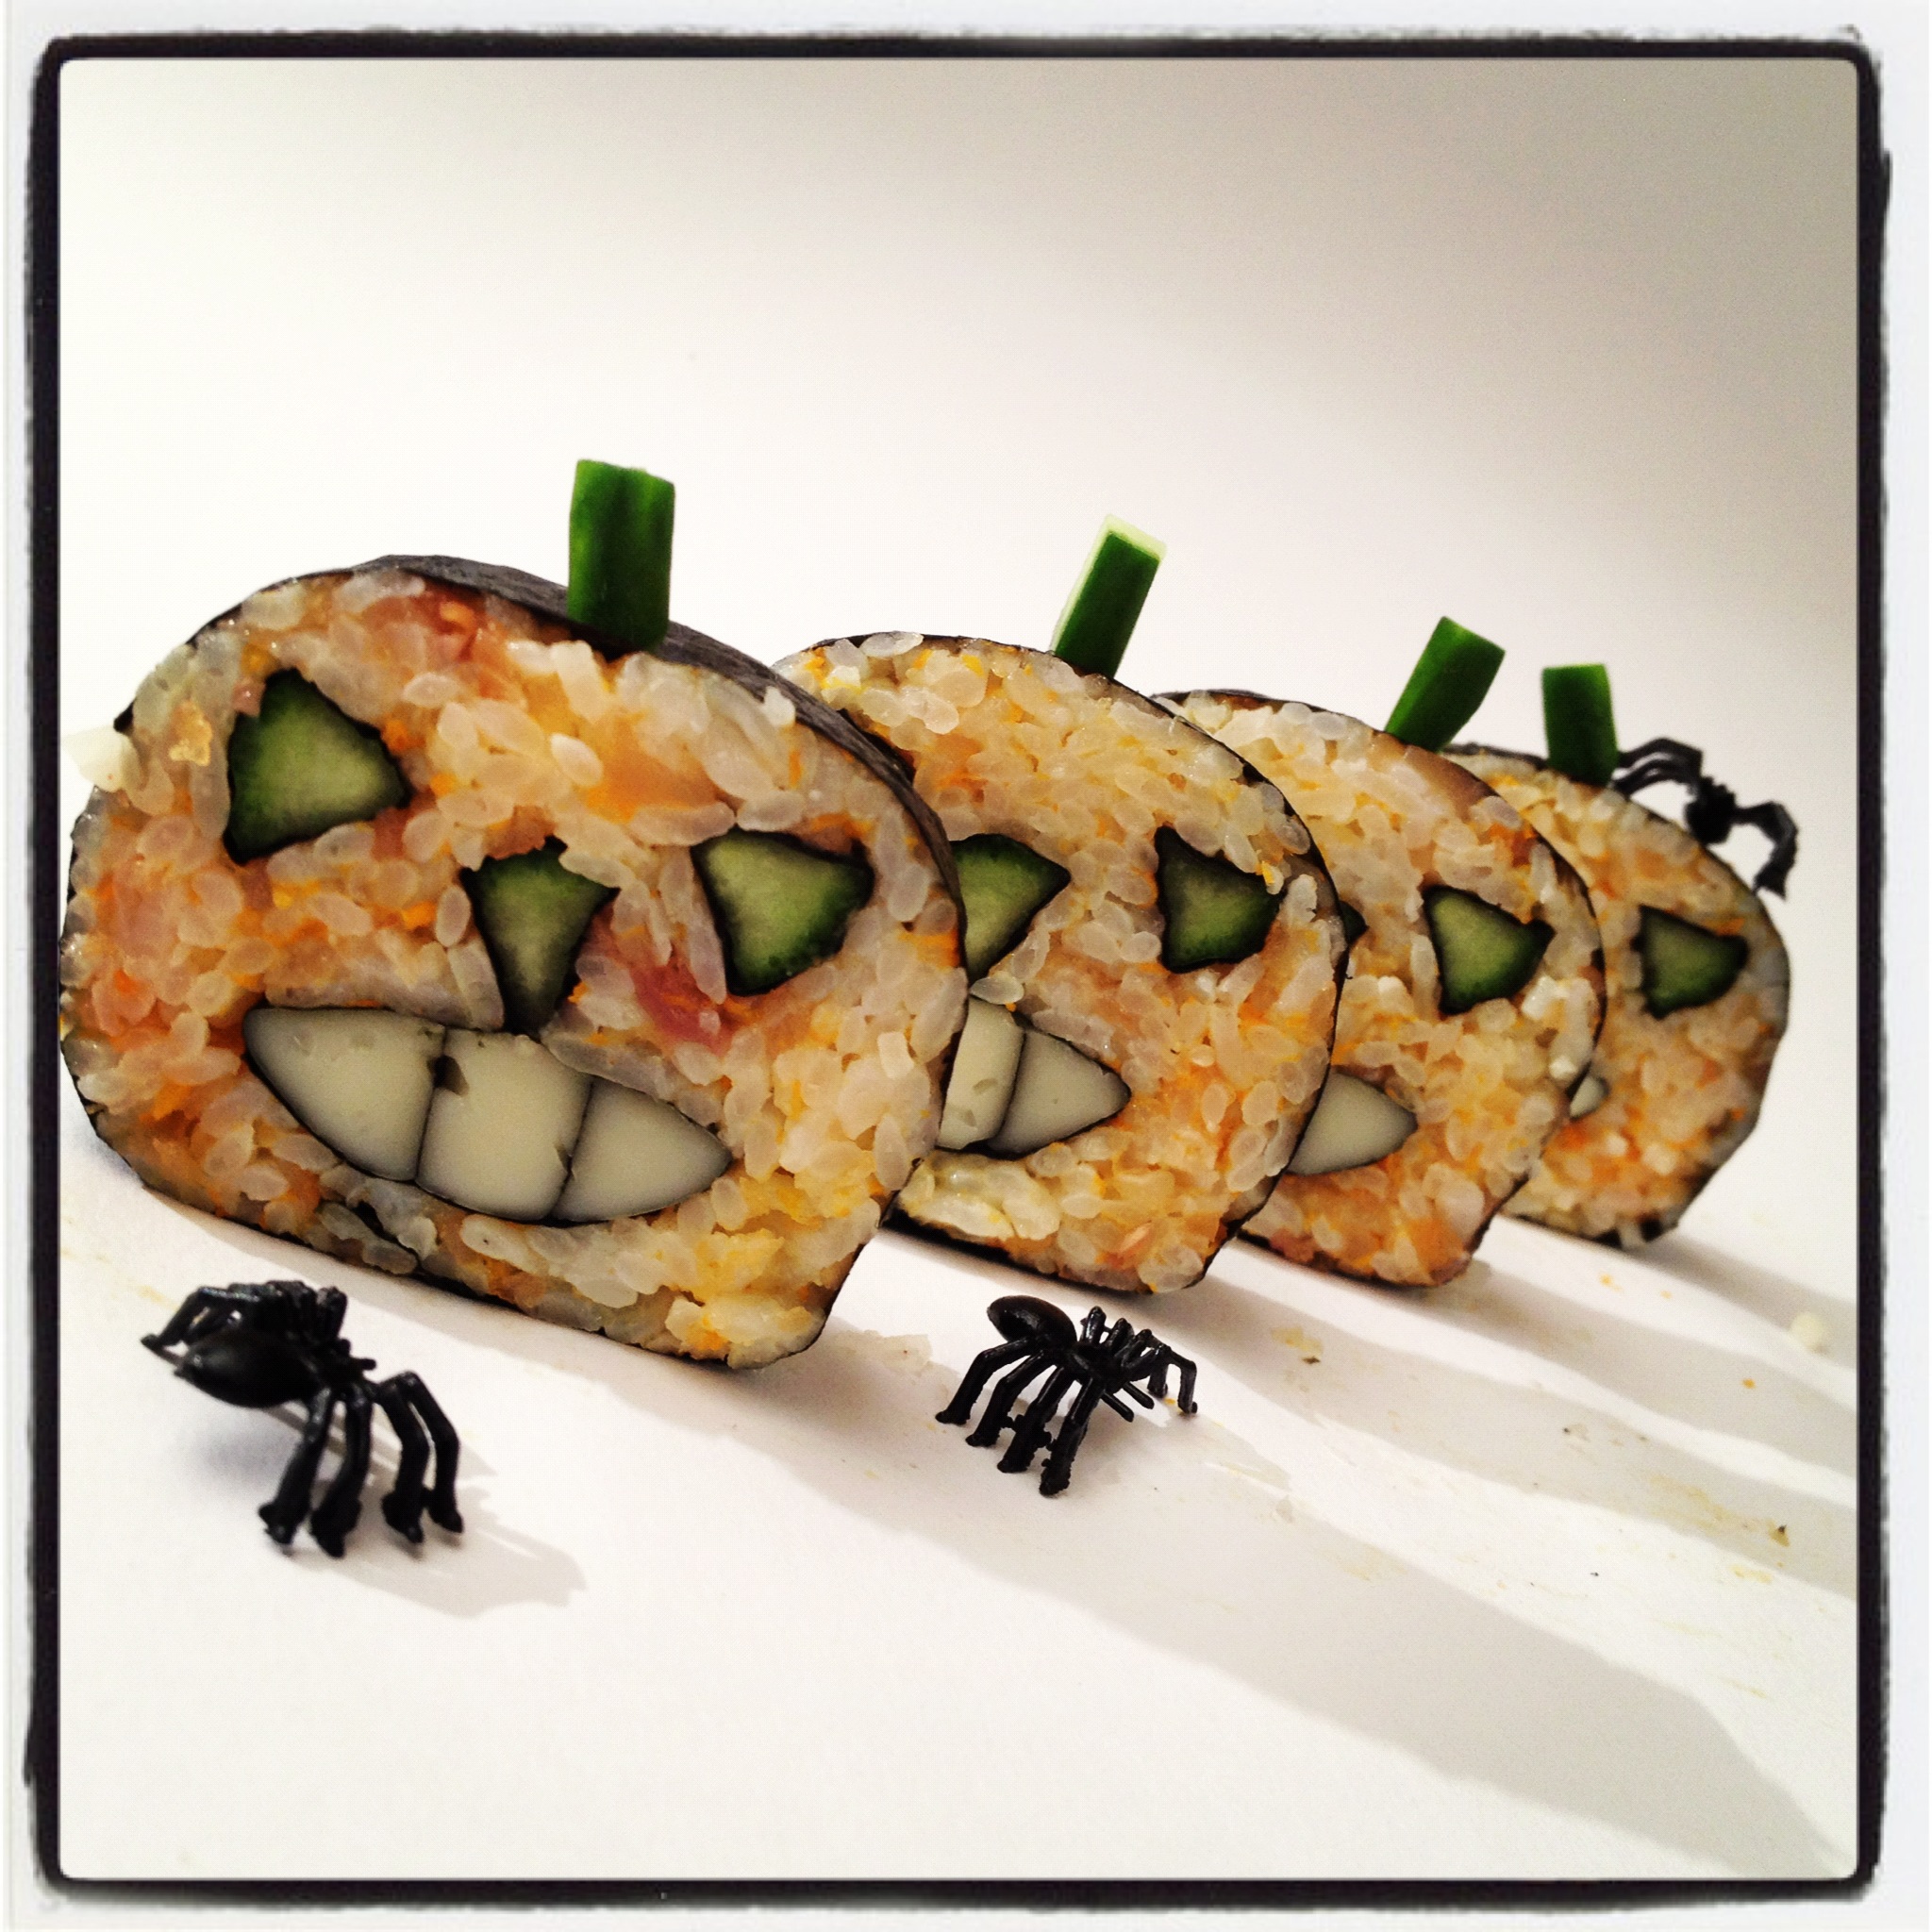 Comparar hambruna Mediante Recetas japonesas: Maki sushi para Halloween